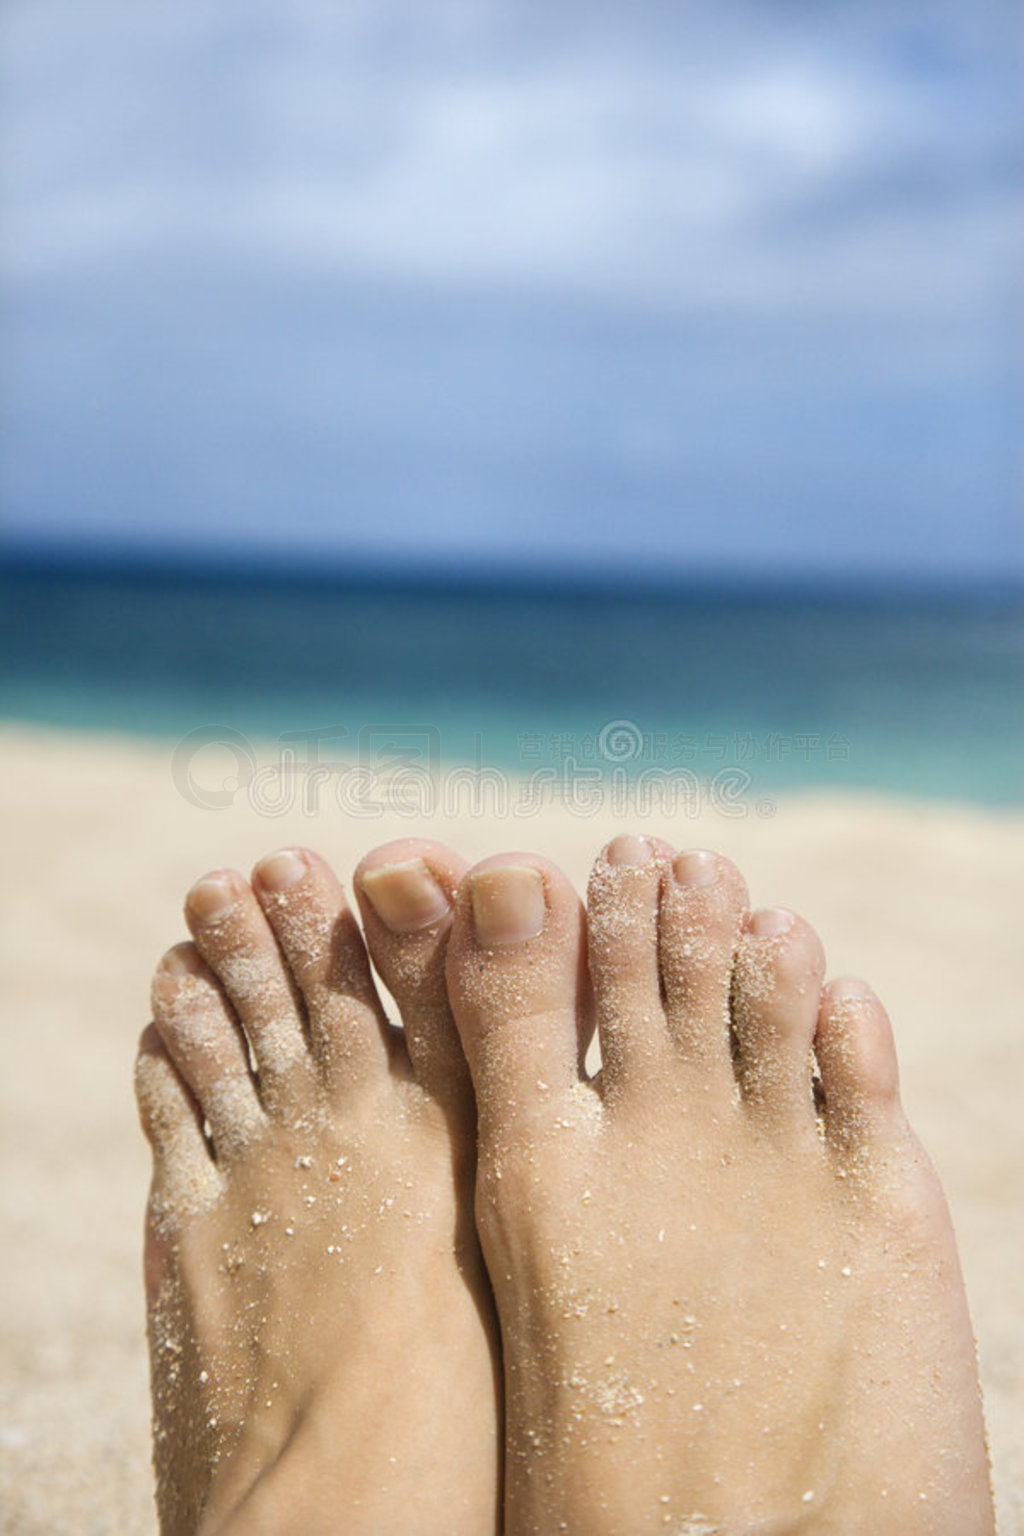 Jada脚踩在海滩上，感受着浪花拍打脚踝的凉爽感，这样惬意的日子让网友们羡慕不已。